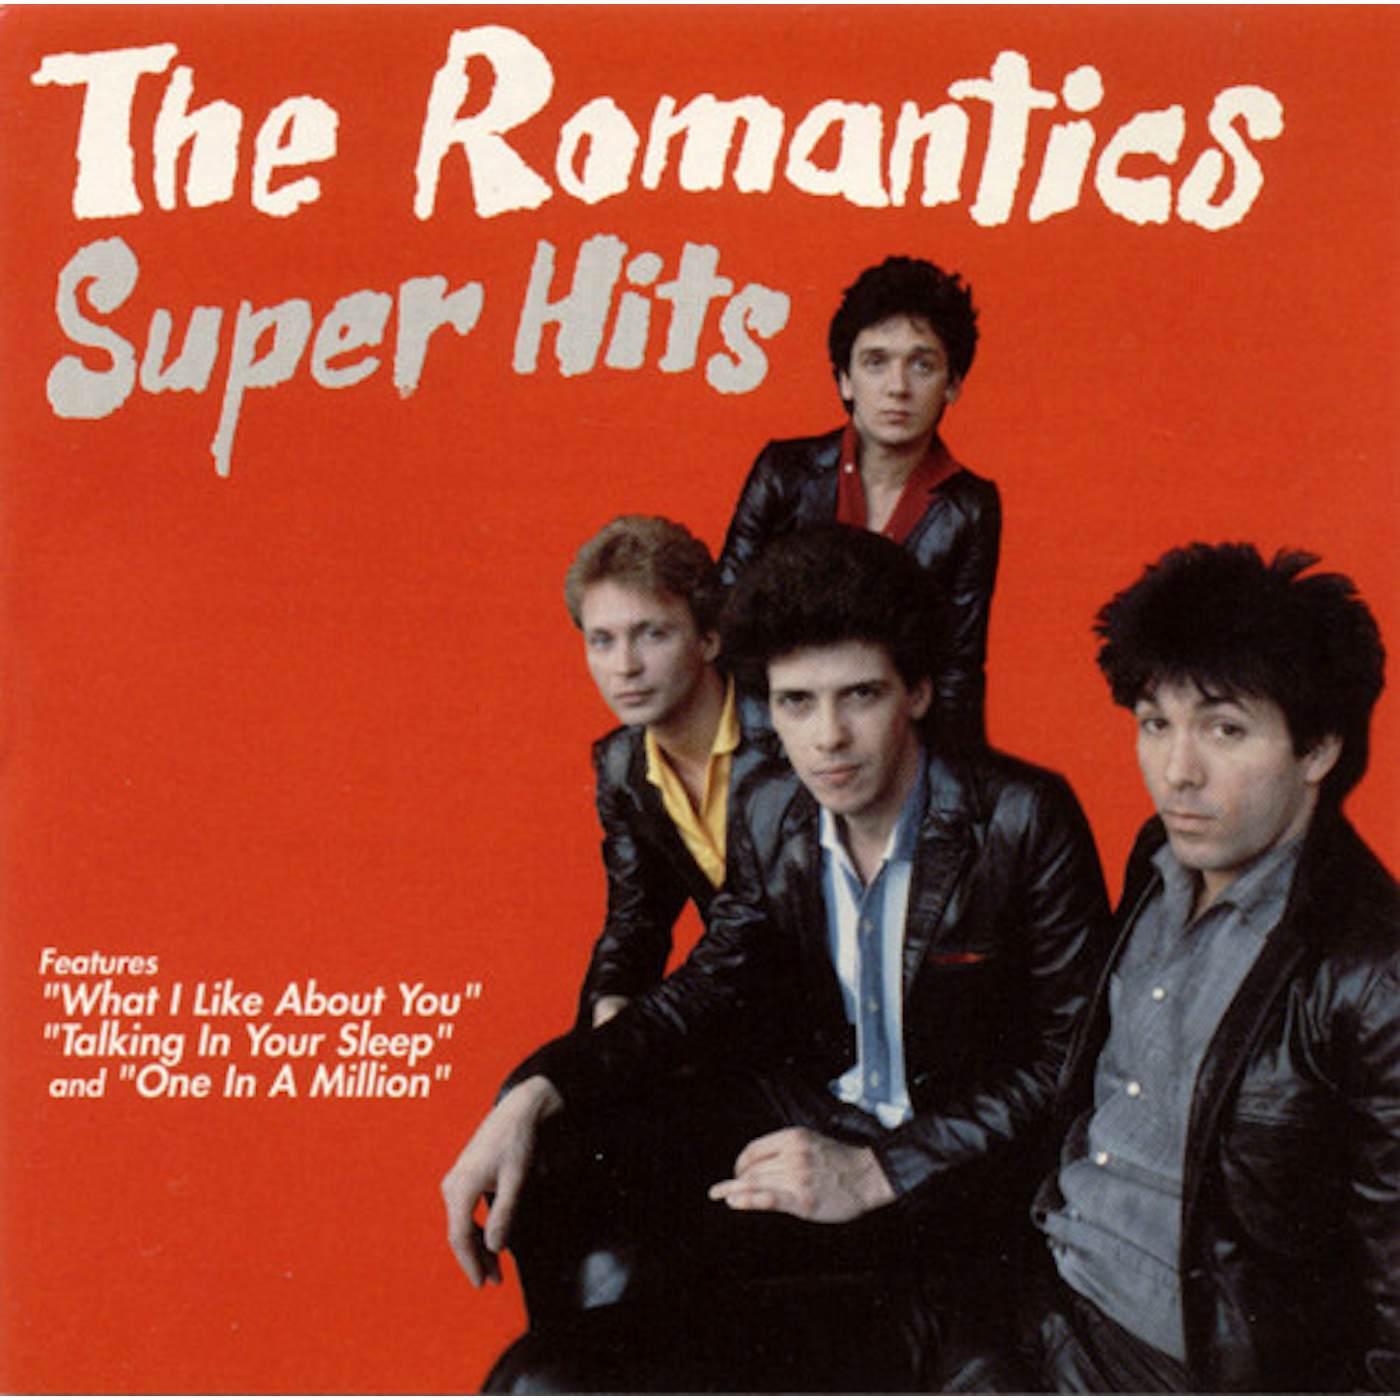 The Romantics SUPER HITS CD